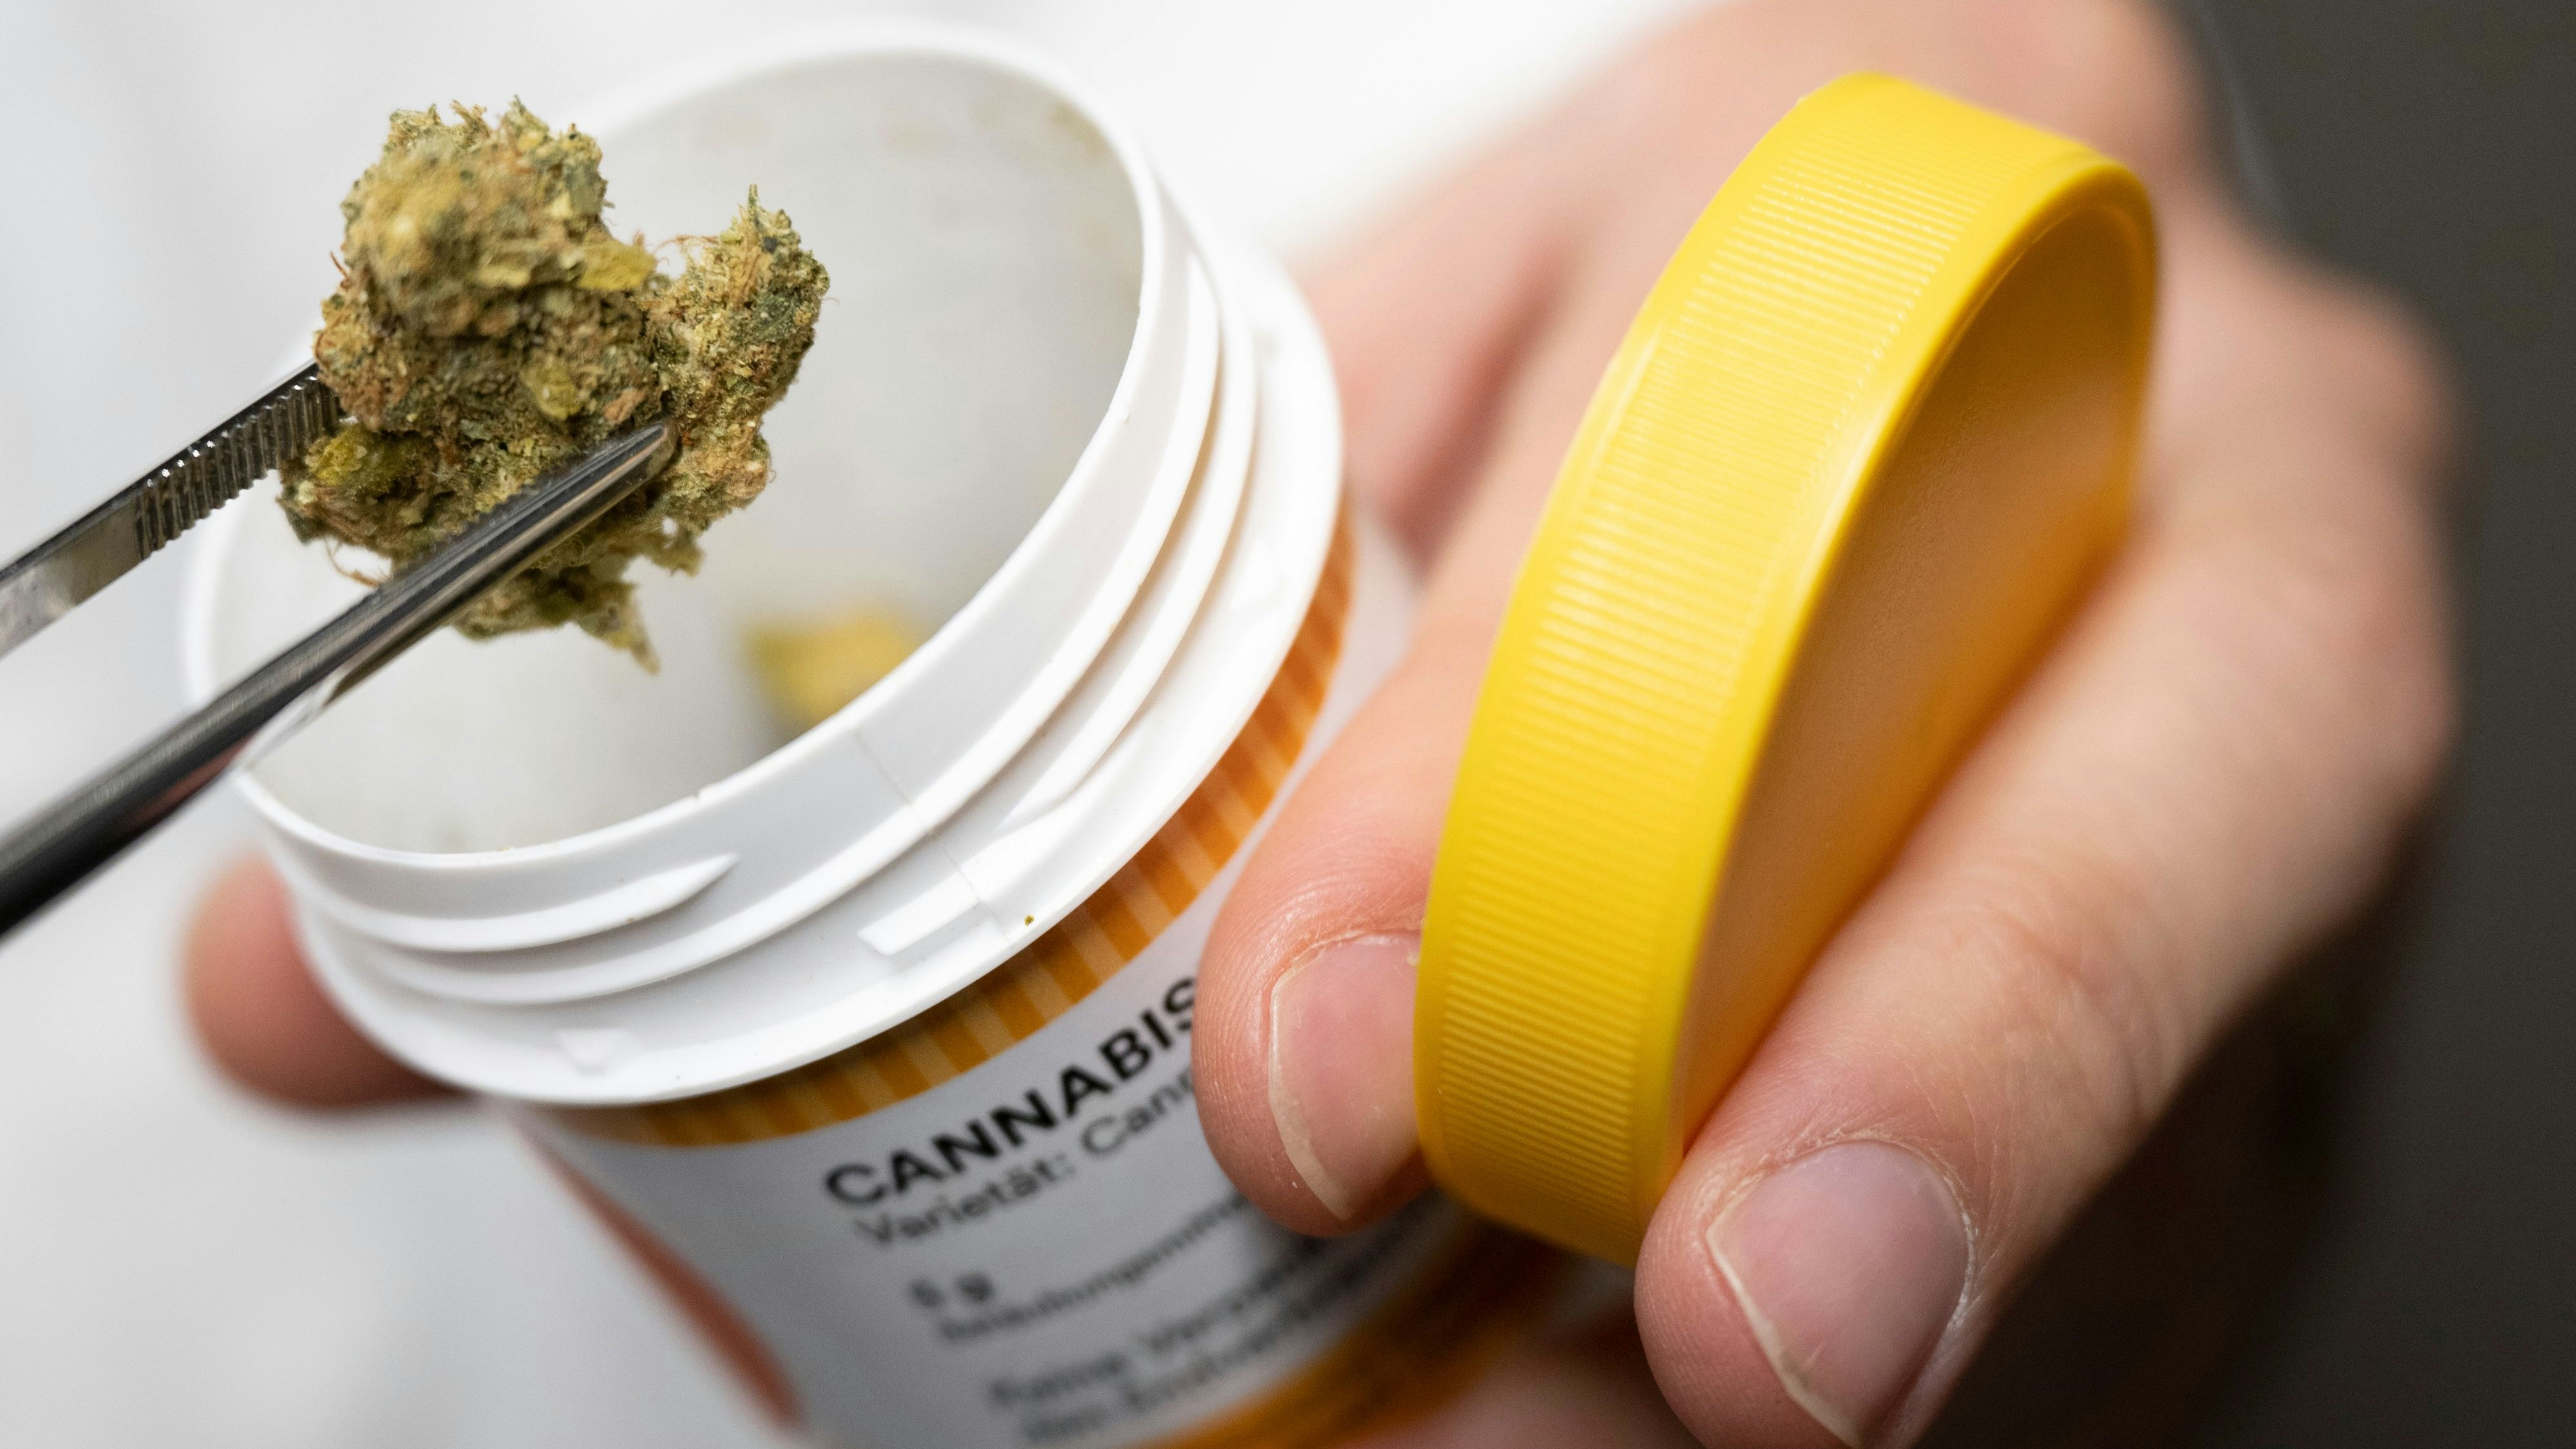 Cannabisblüten zur medizinischen Behandlung gehören zum Produktbestand von "Cansativa". Symbolfoto: dpa